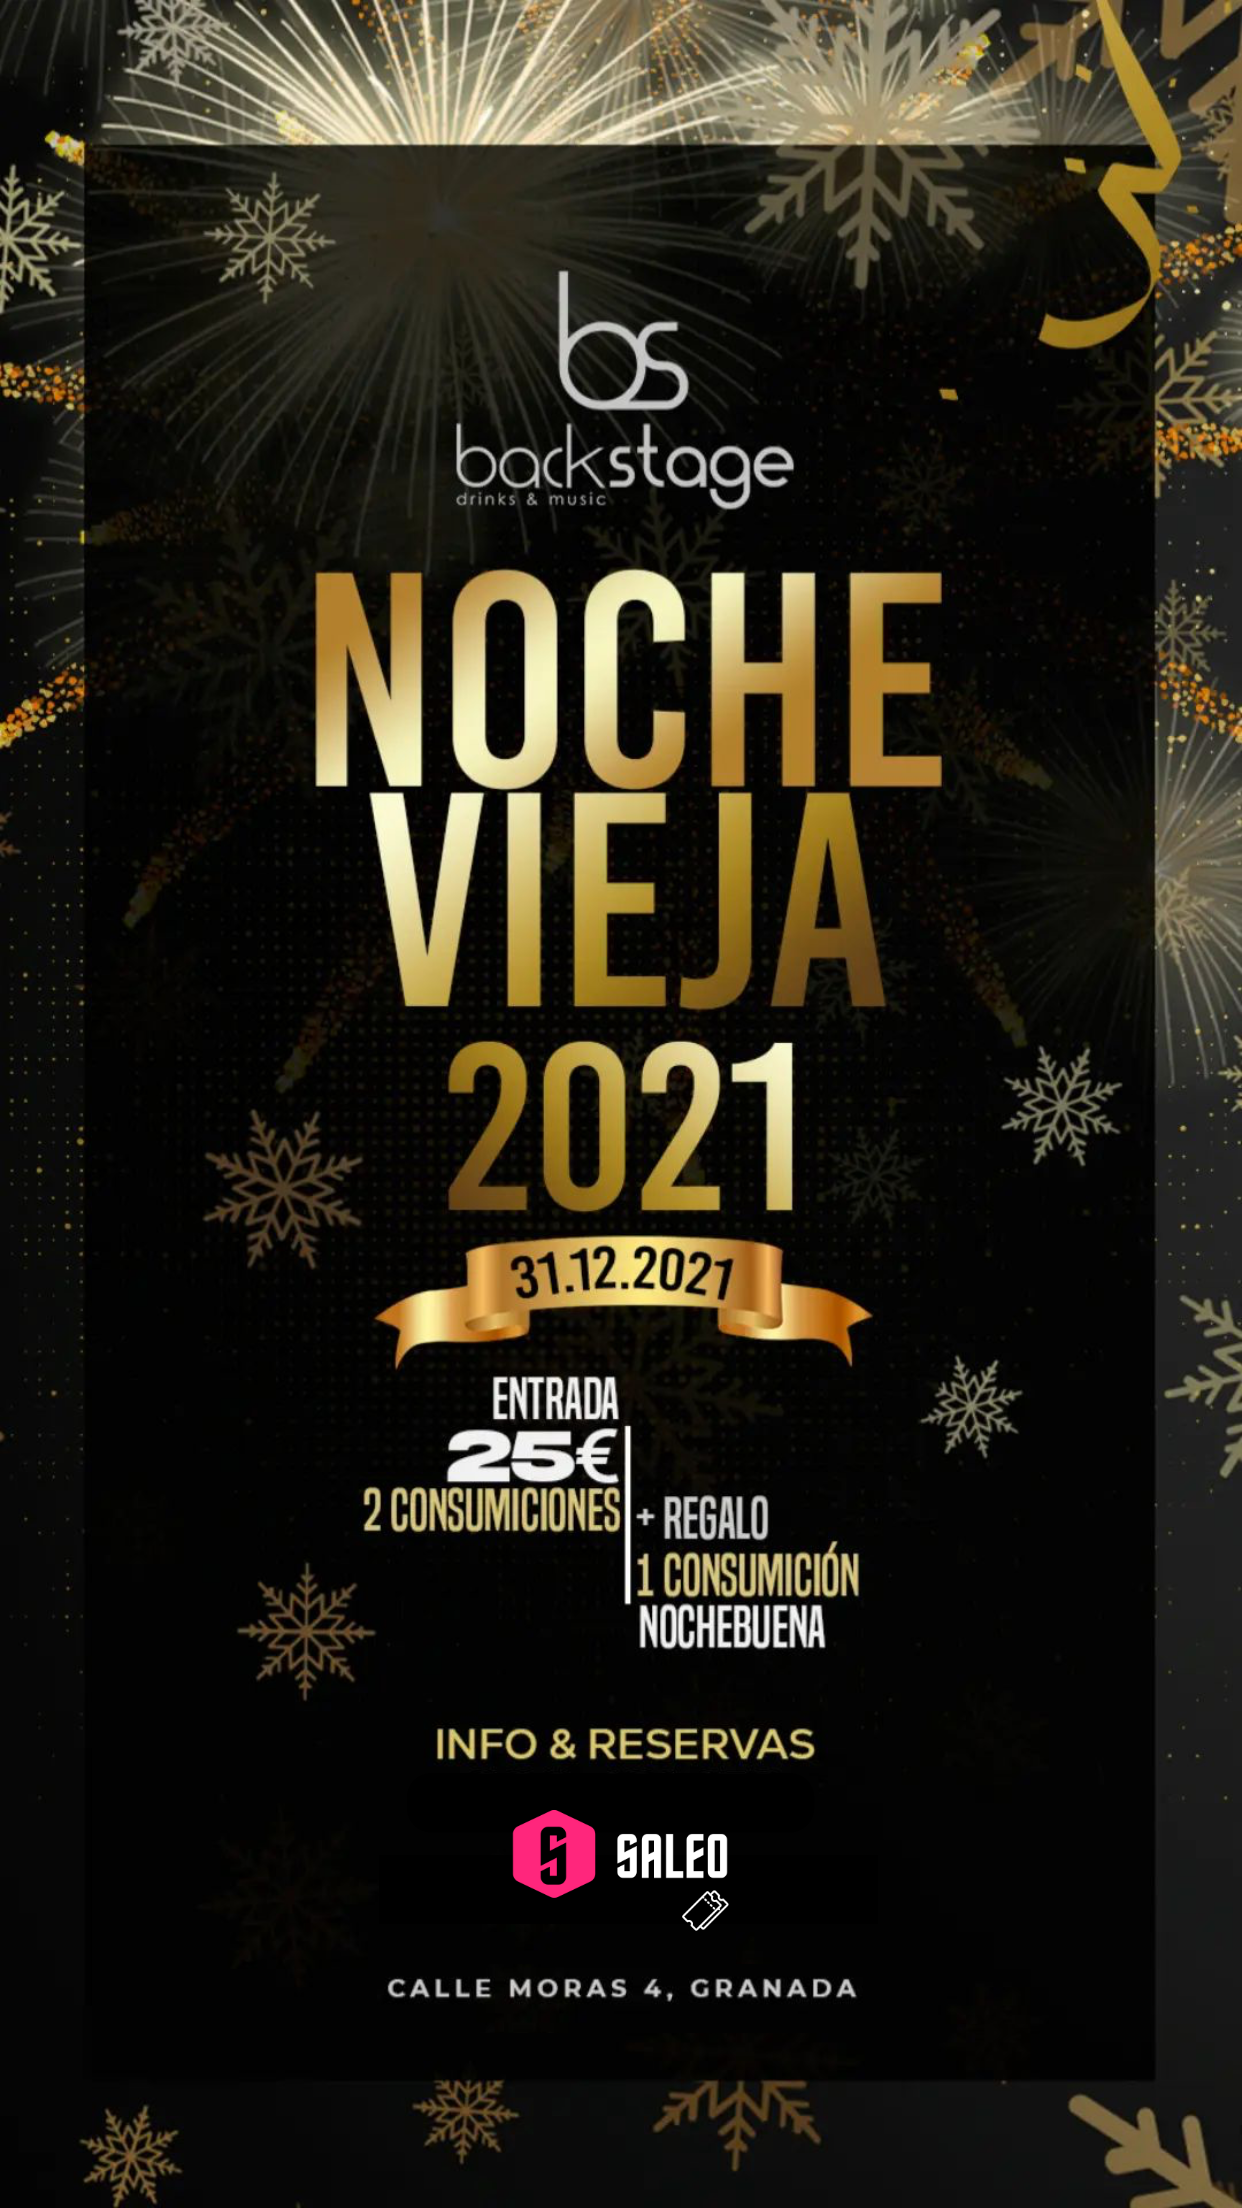 Nochevieja 2021 en Discoteca Backstage Granada